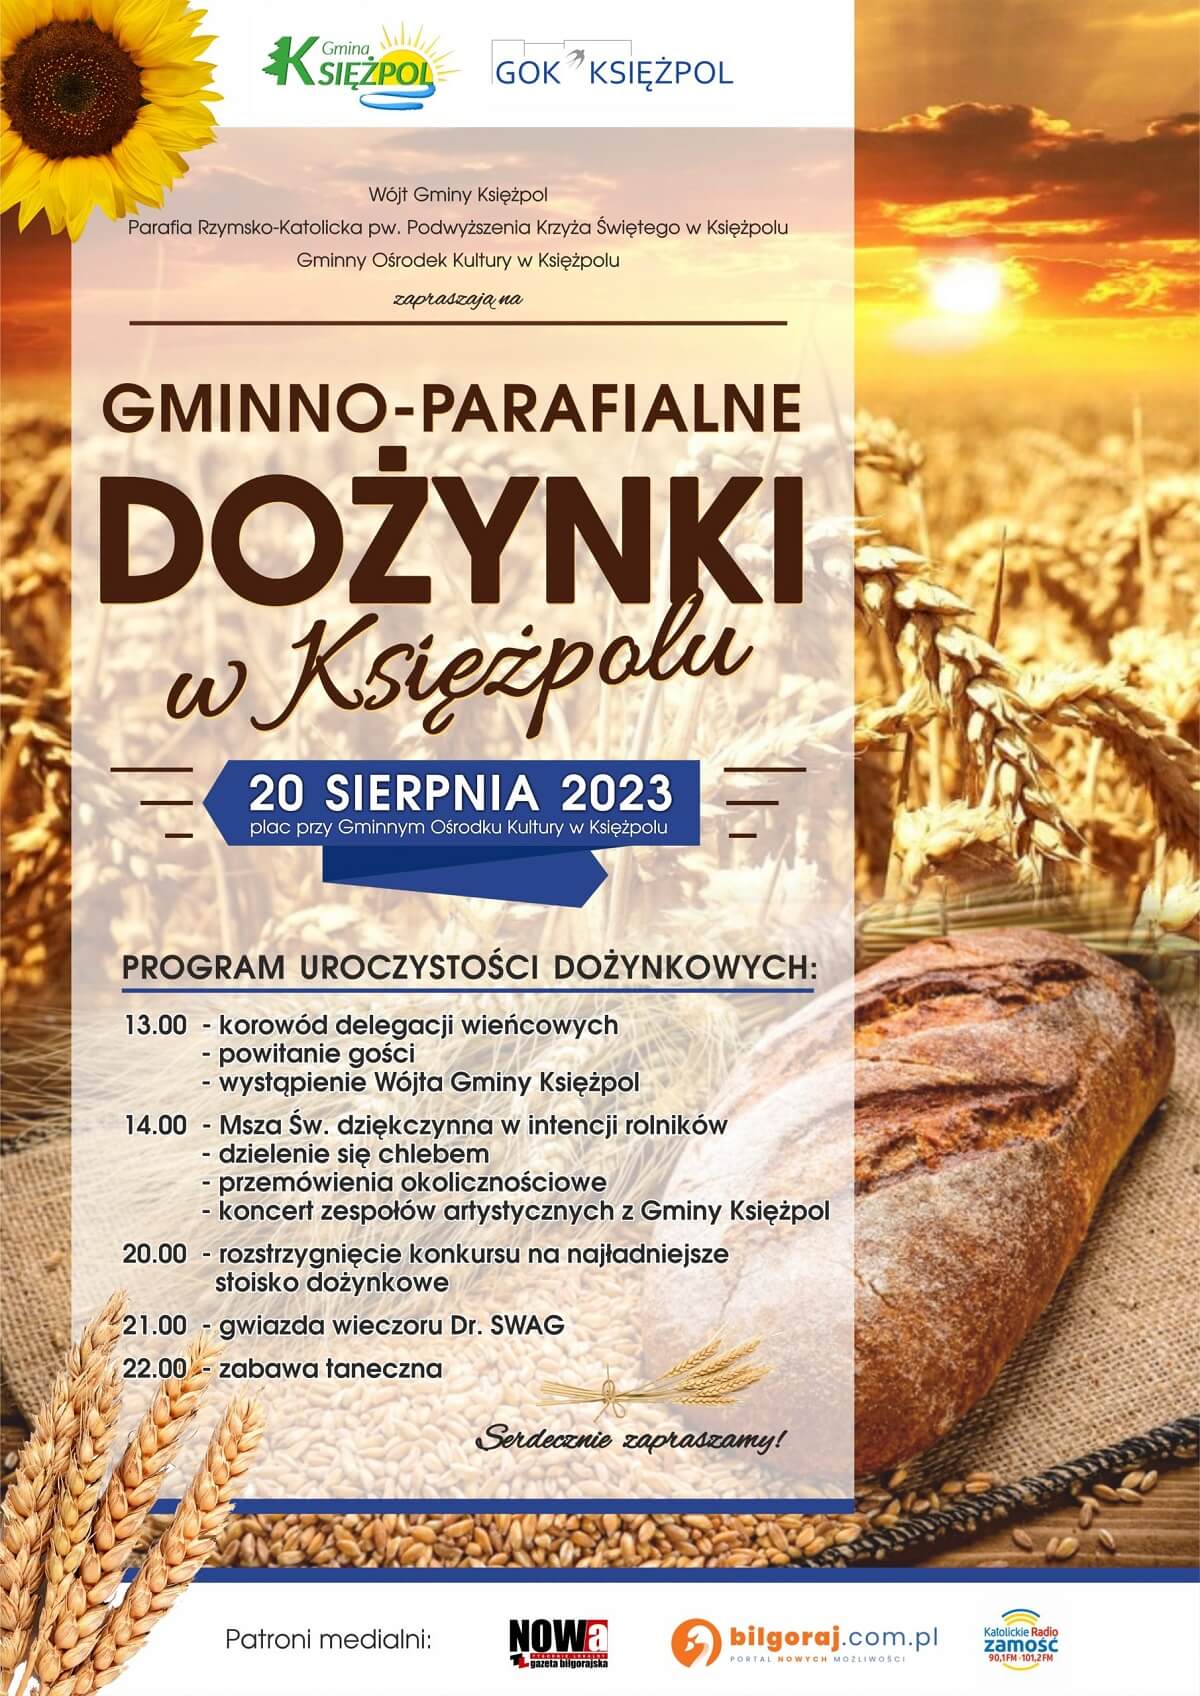 Dożynki w Księżpolu 2023 - plakat, program wydarzenia